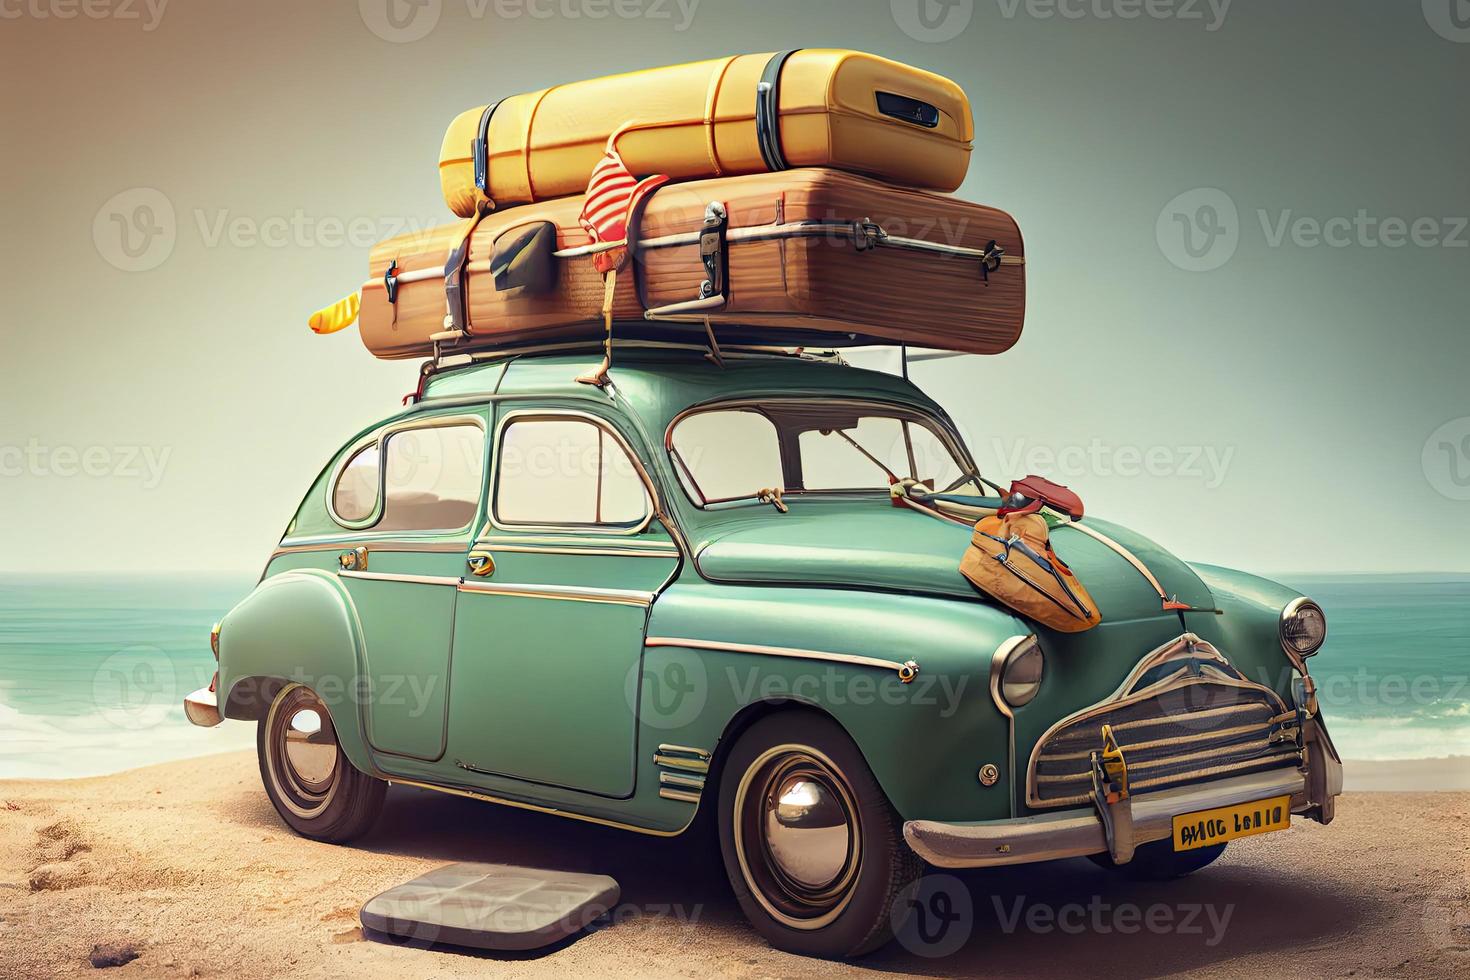 petit rétro voiture avec bagages, bagage et plage équipement sur le toit, pleinement emballé, prêt pour été vacances, concept photo